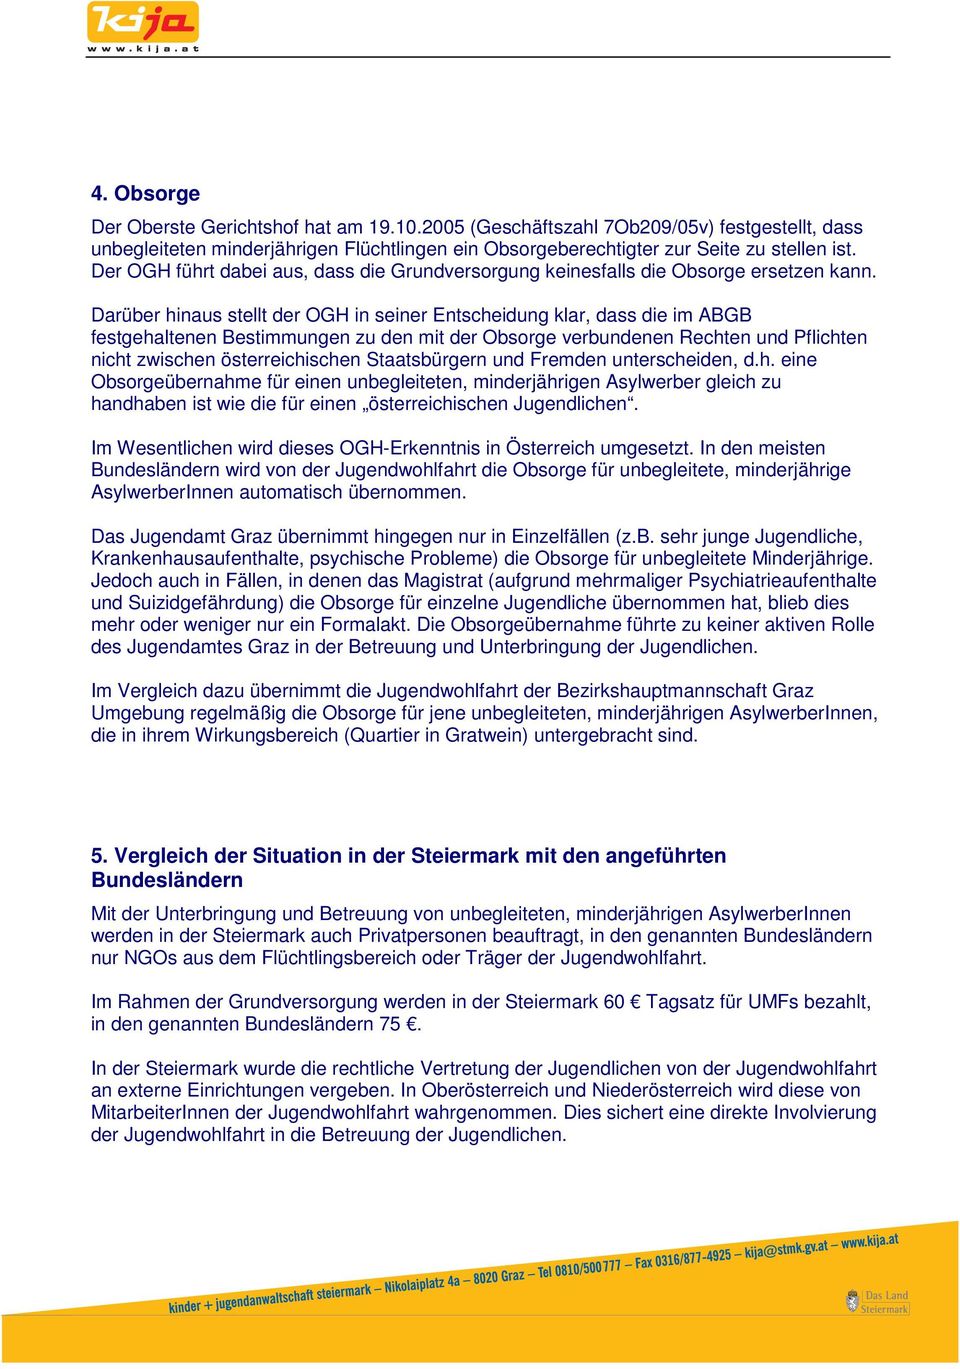 Darüber hinaus stellt der OGH in seiner Entscheidung klar, dass die im ABGB festgehaltenen Bestimmungen zu den mit der Obsorge verbundenen Rechten und Pflichten nicht zwischen österreichischen